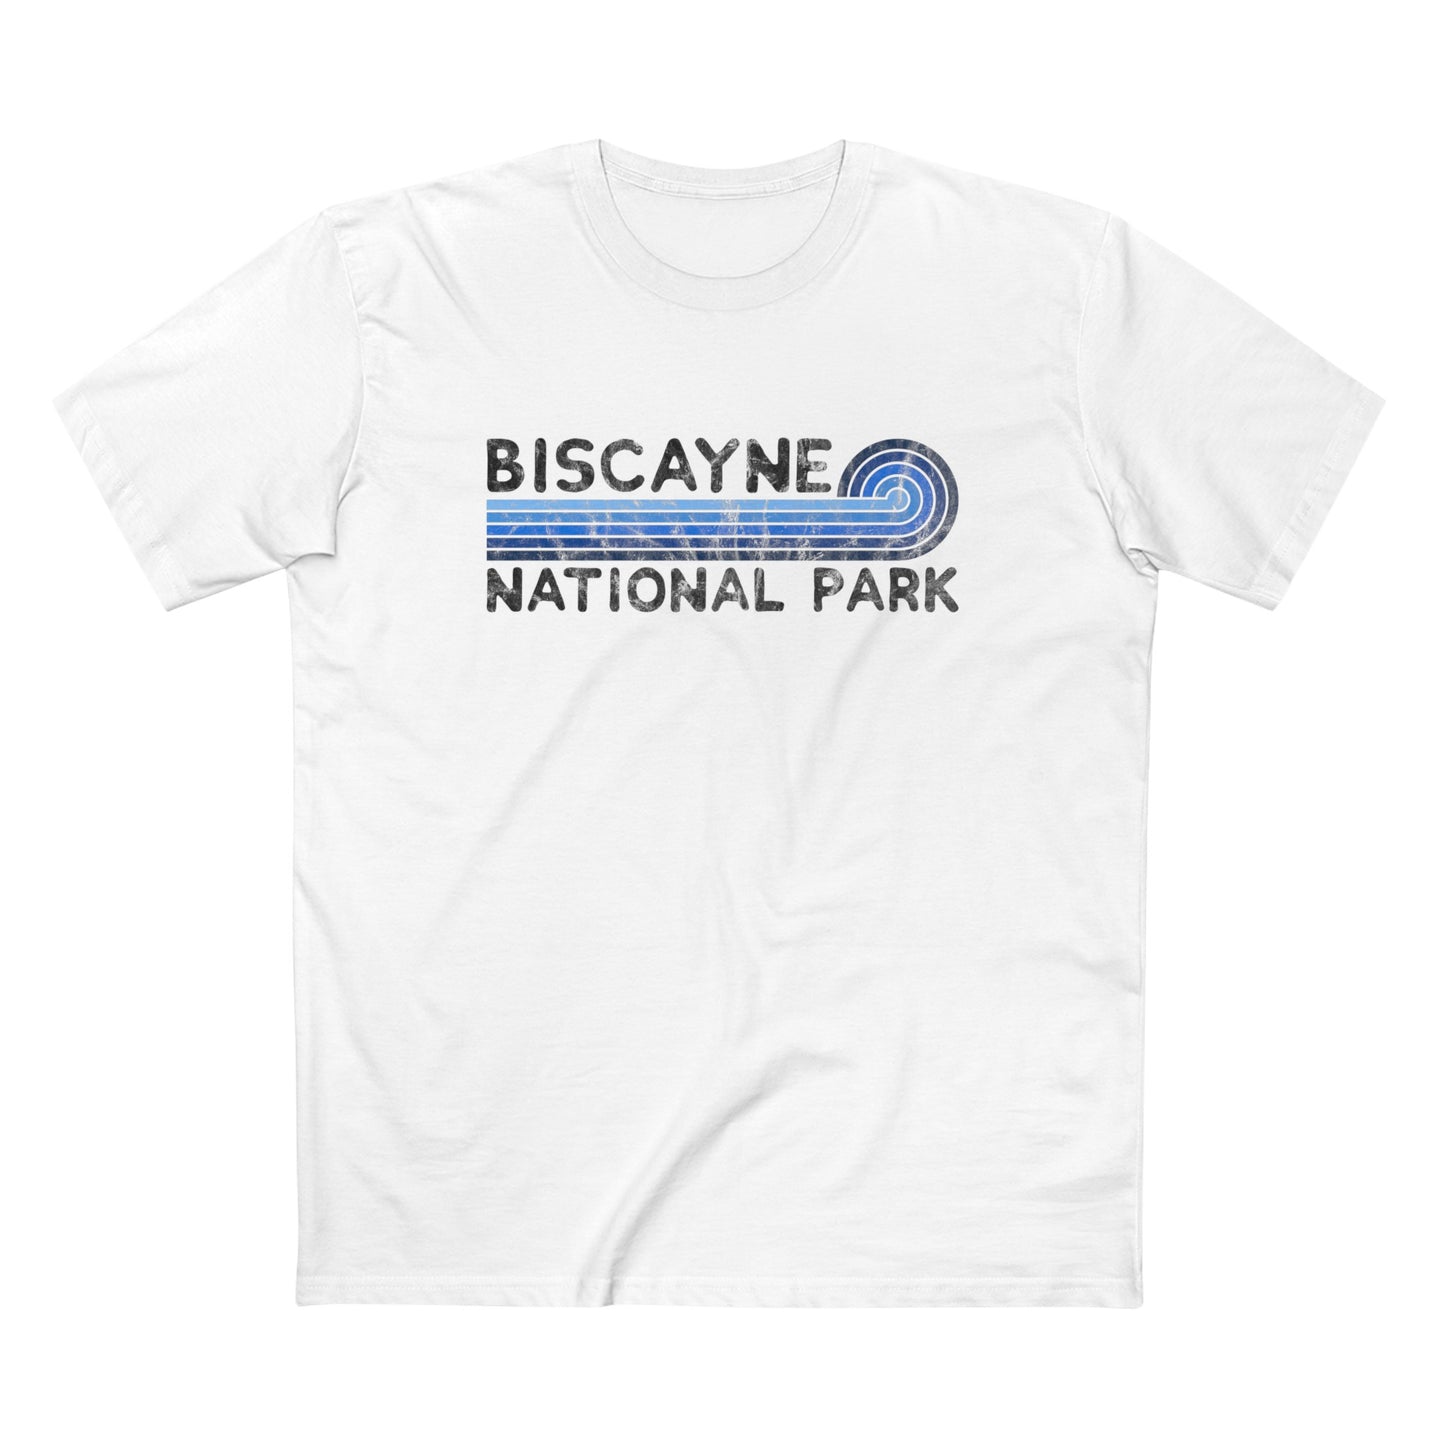 Biscayne National Park T-Shirt - Blue Vintage Stretched Sunrise